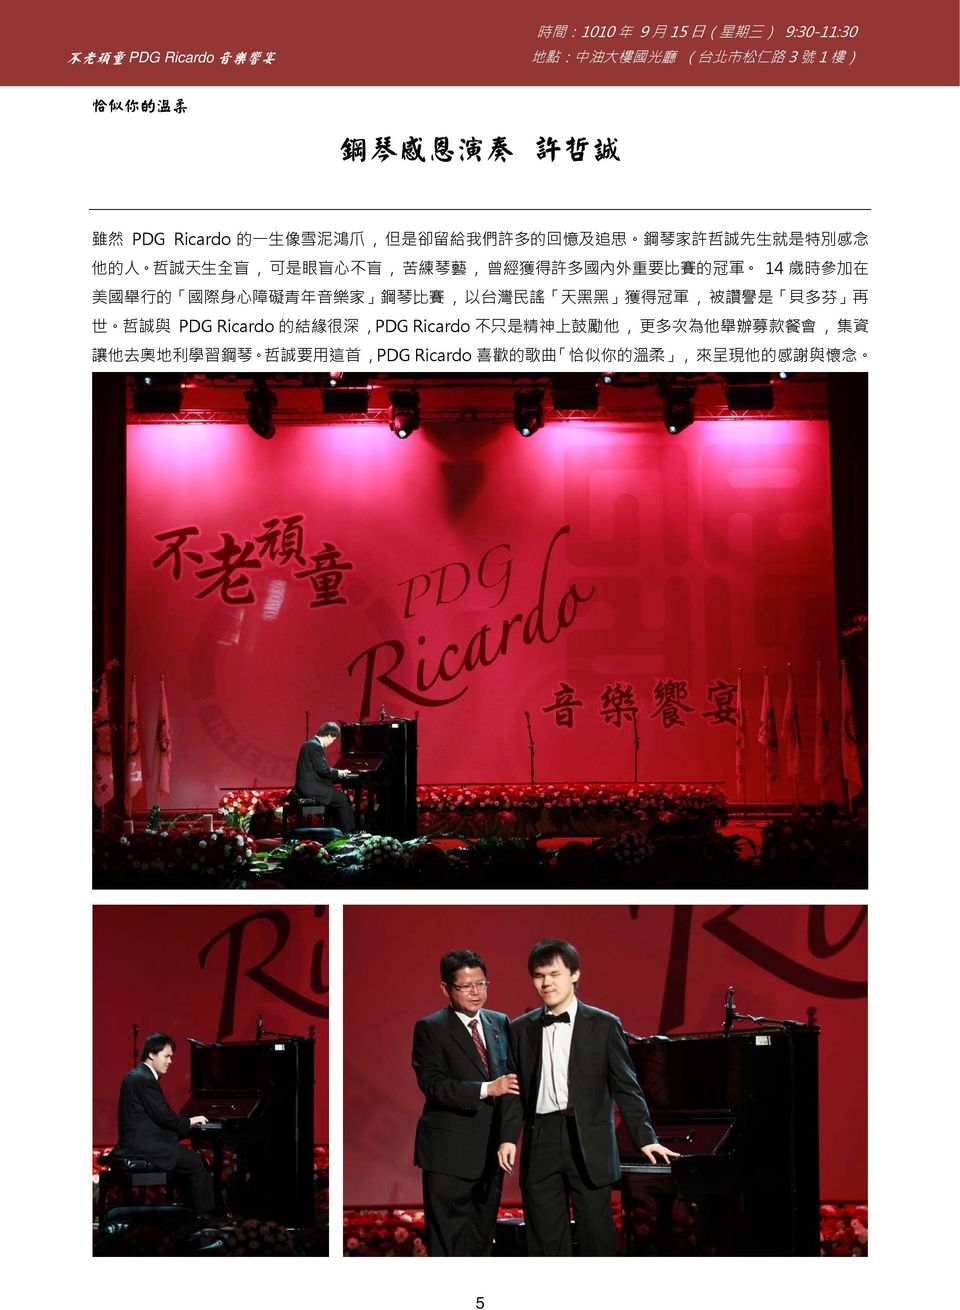 鋼琴比賽, 以台灣民謠 天黑黑 獲得冠軍, 被讚譽是 貝多芬 再 世 哲誠與 PDG Ricardo 的結緣很深, PDG Ricardo